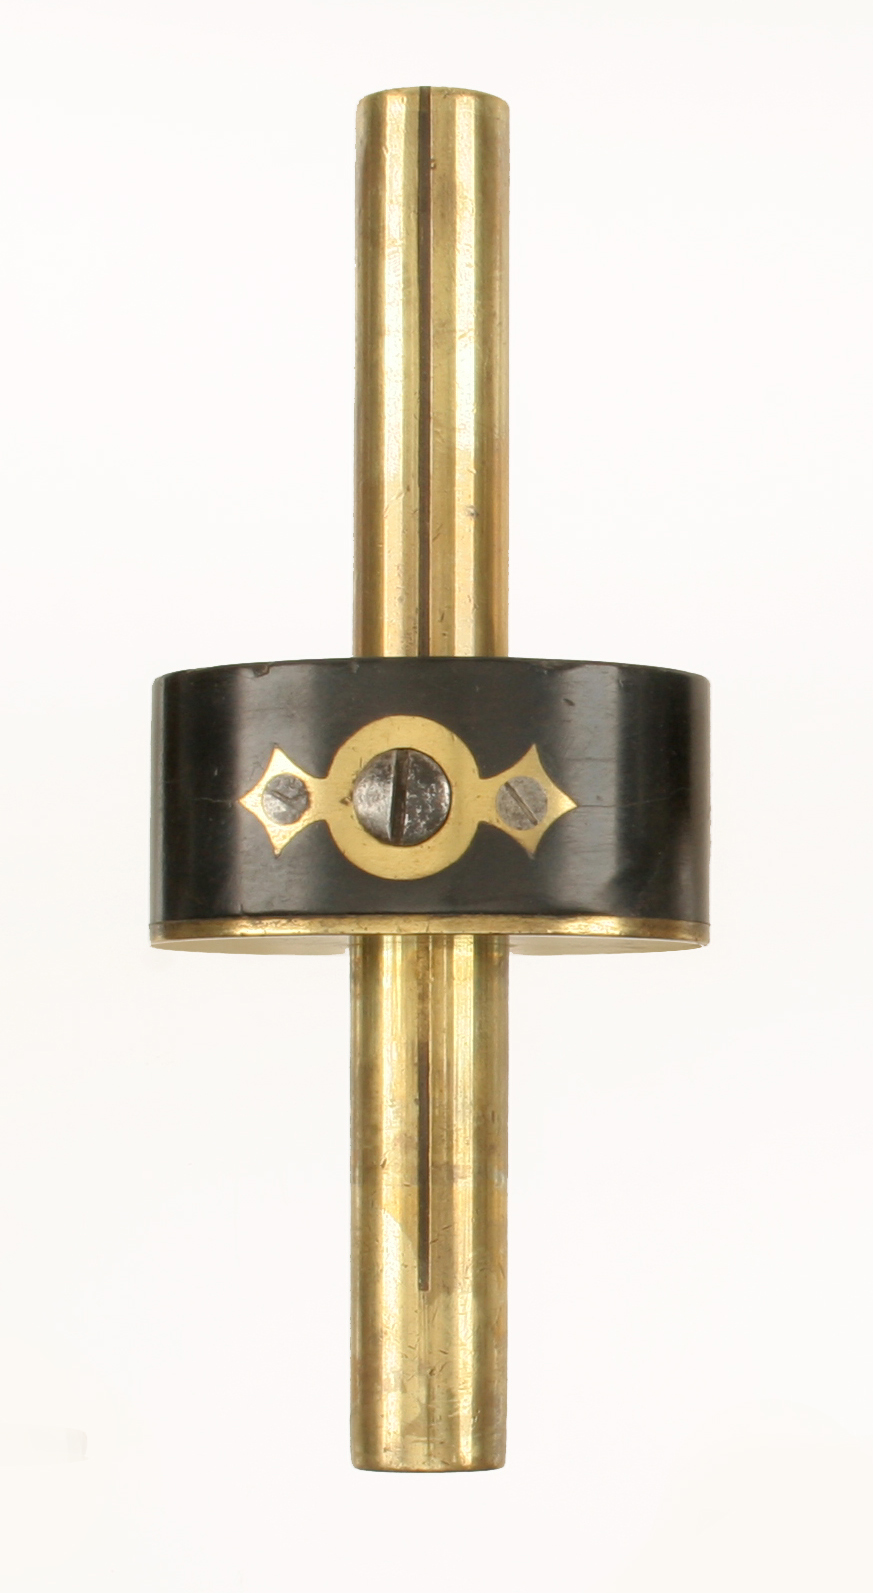 A little used brass stemmed ebony mortice gauge by MARPLES G++